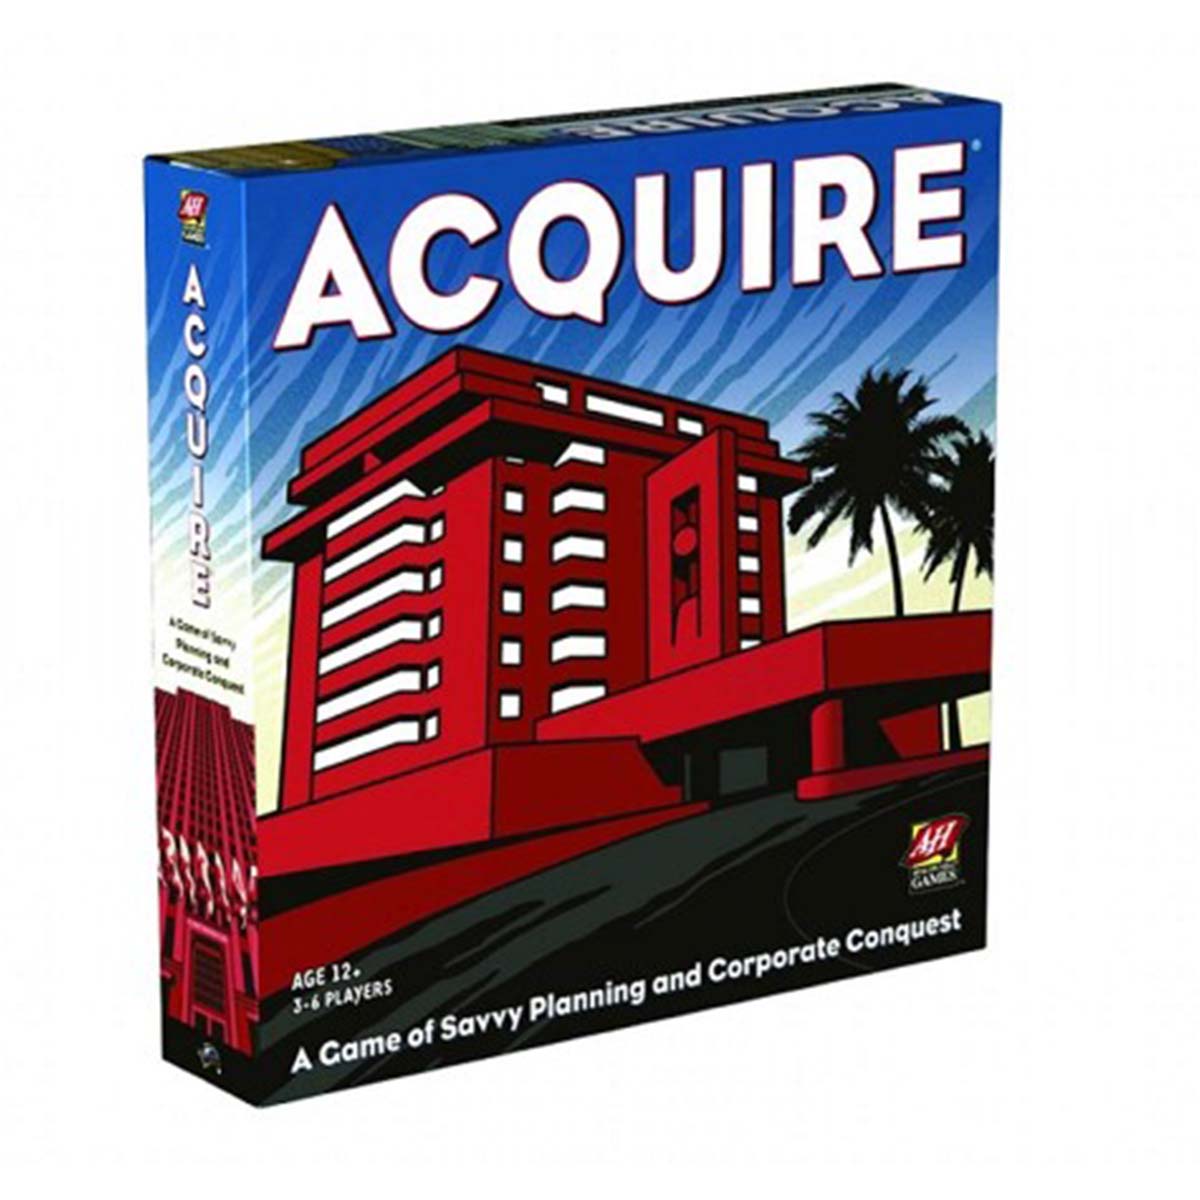 Acquire board game box